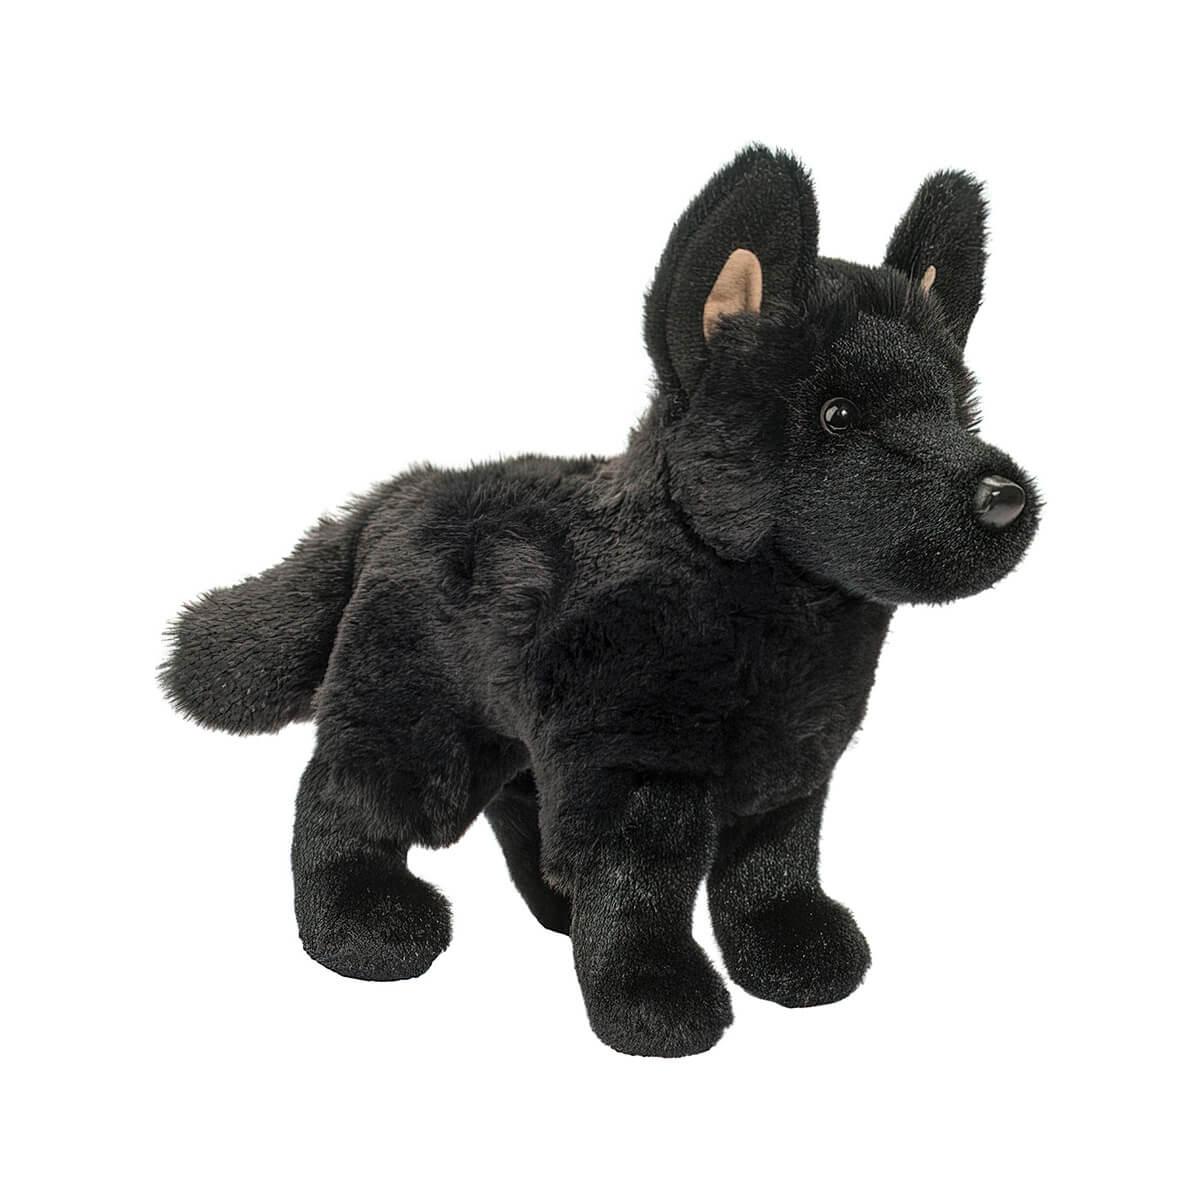  Harko The Black German Shepherd Plush Toy